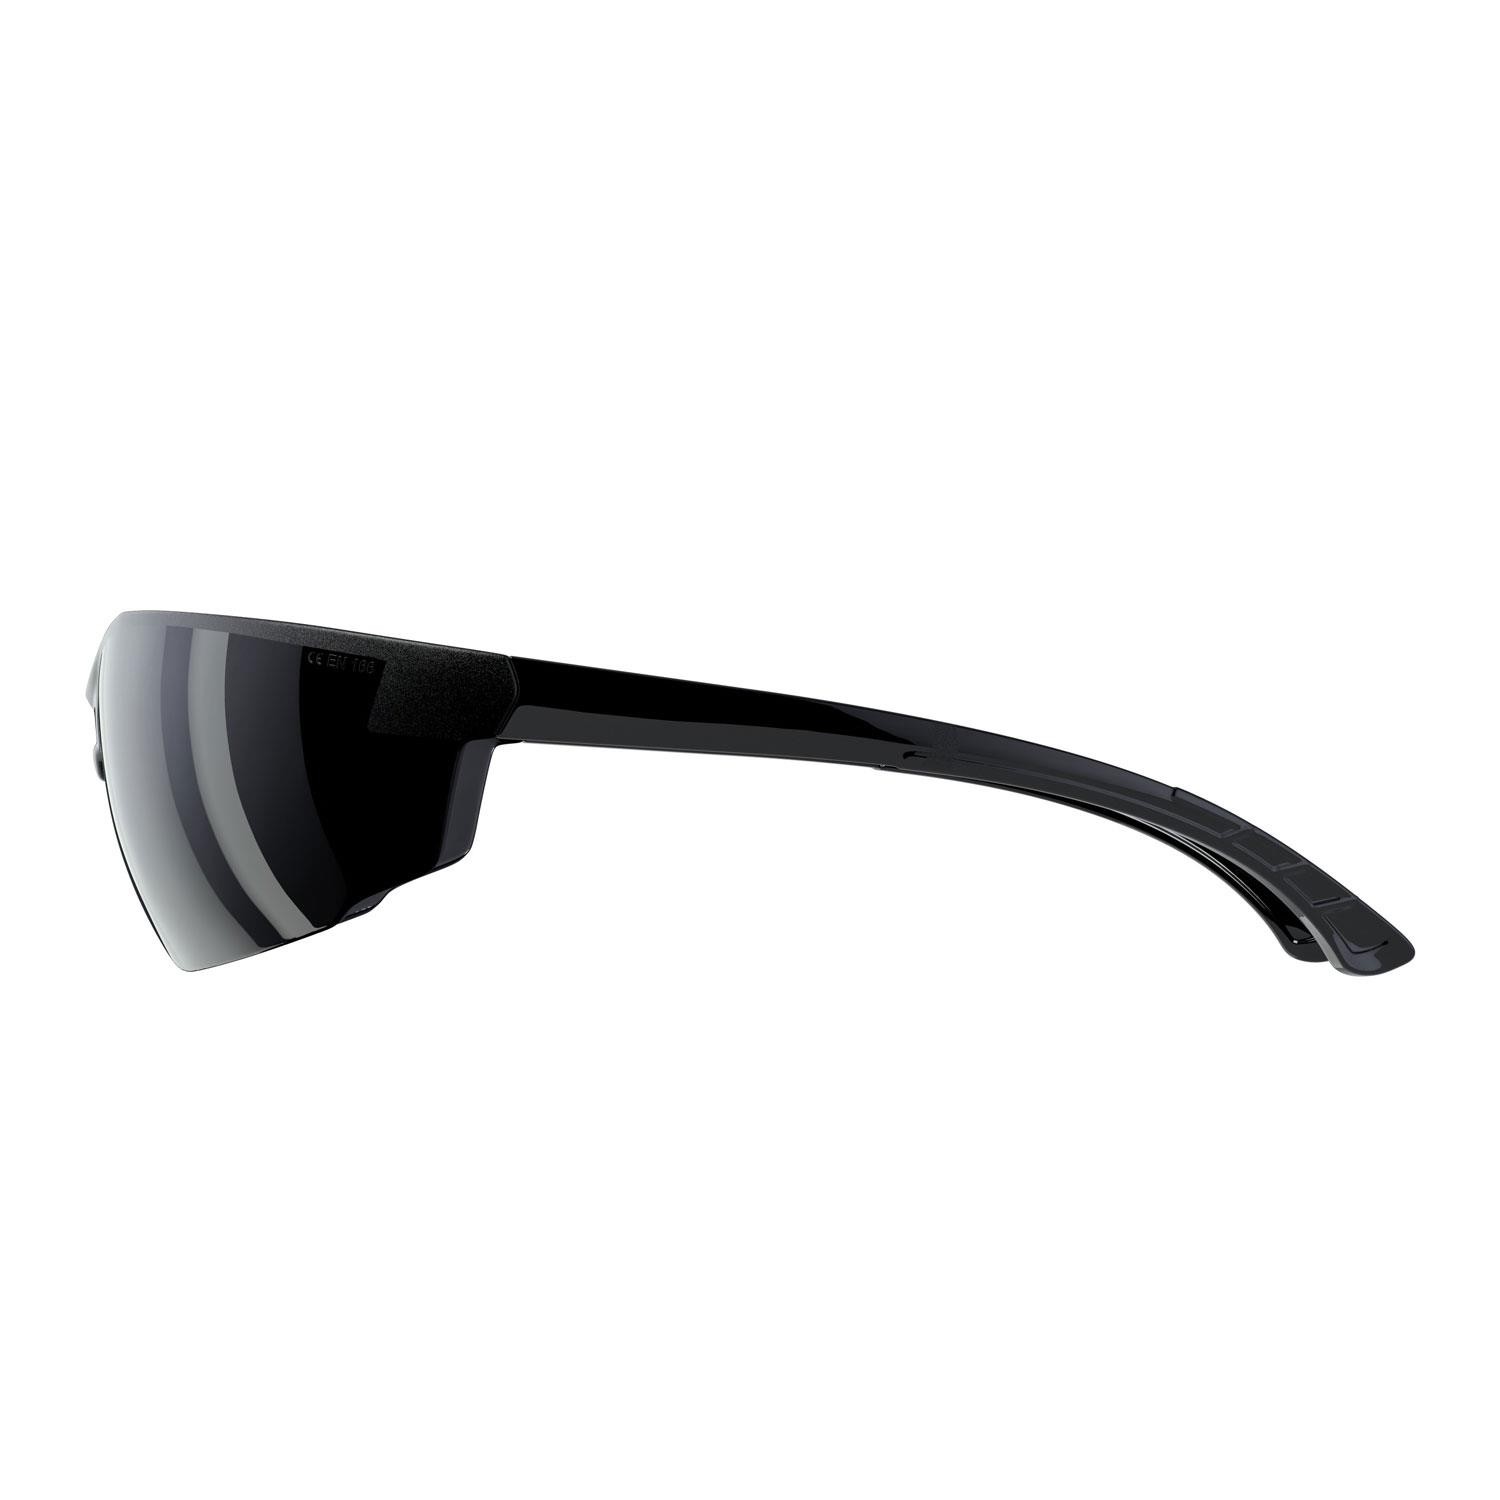 İş Güvenlik Gözlüğü UV Koruyucu Silikonlu Kaynak Gözlük S1100 Siyah